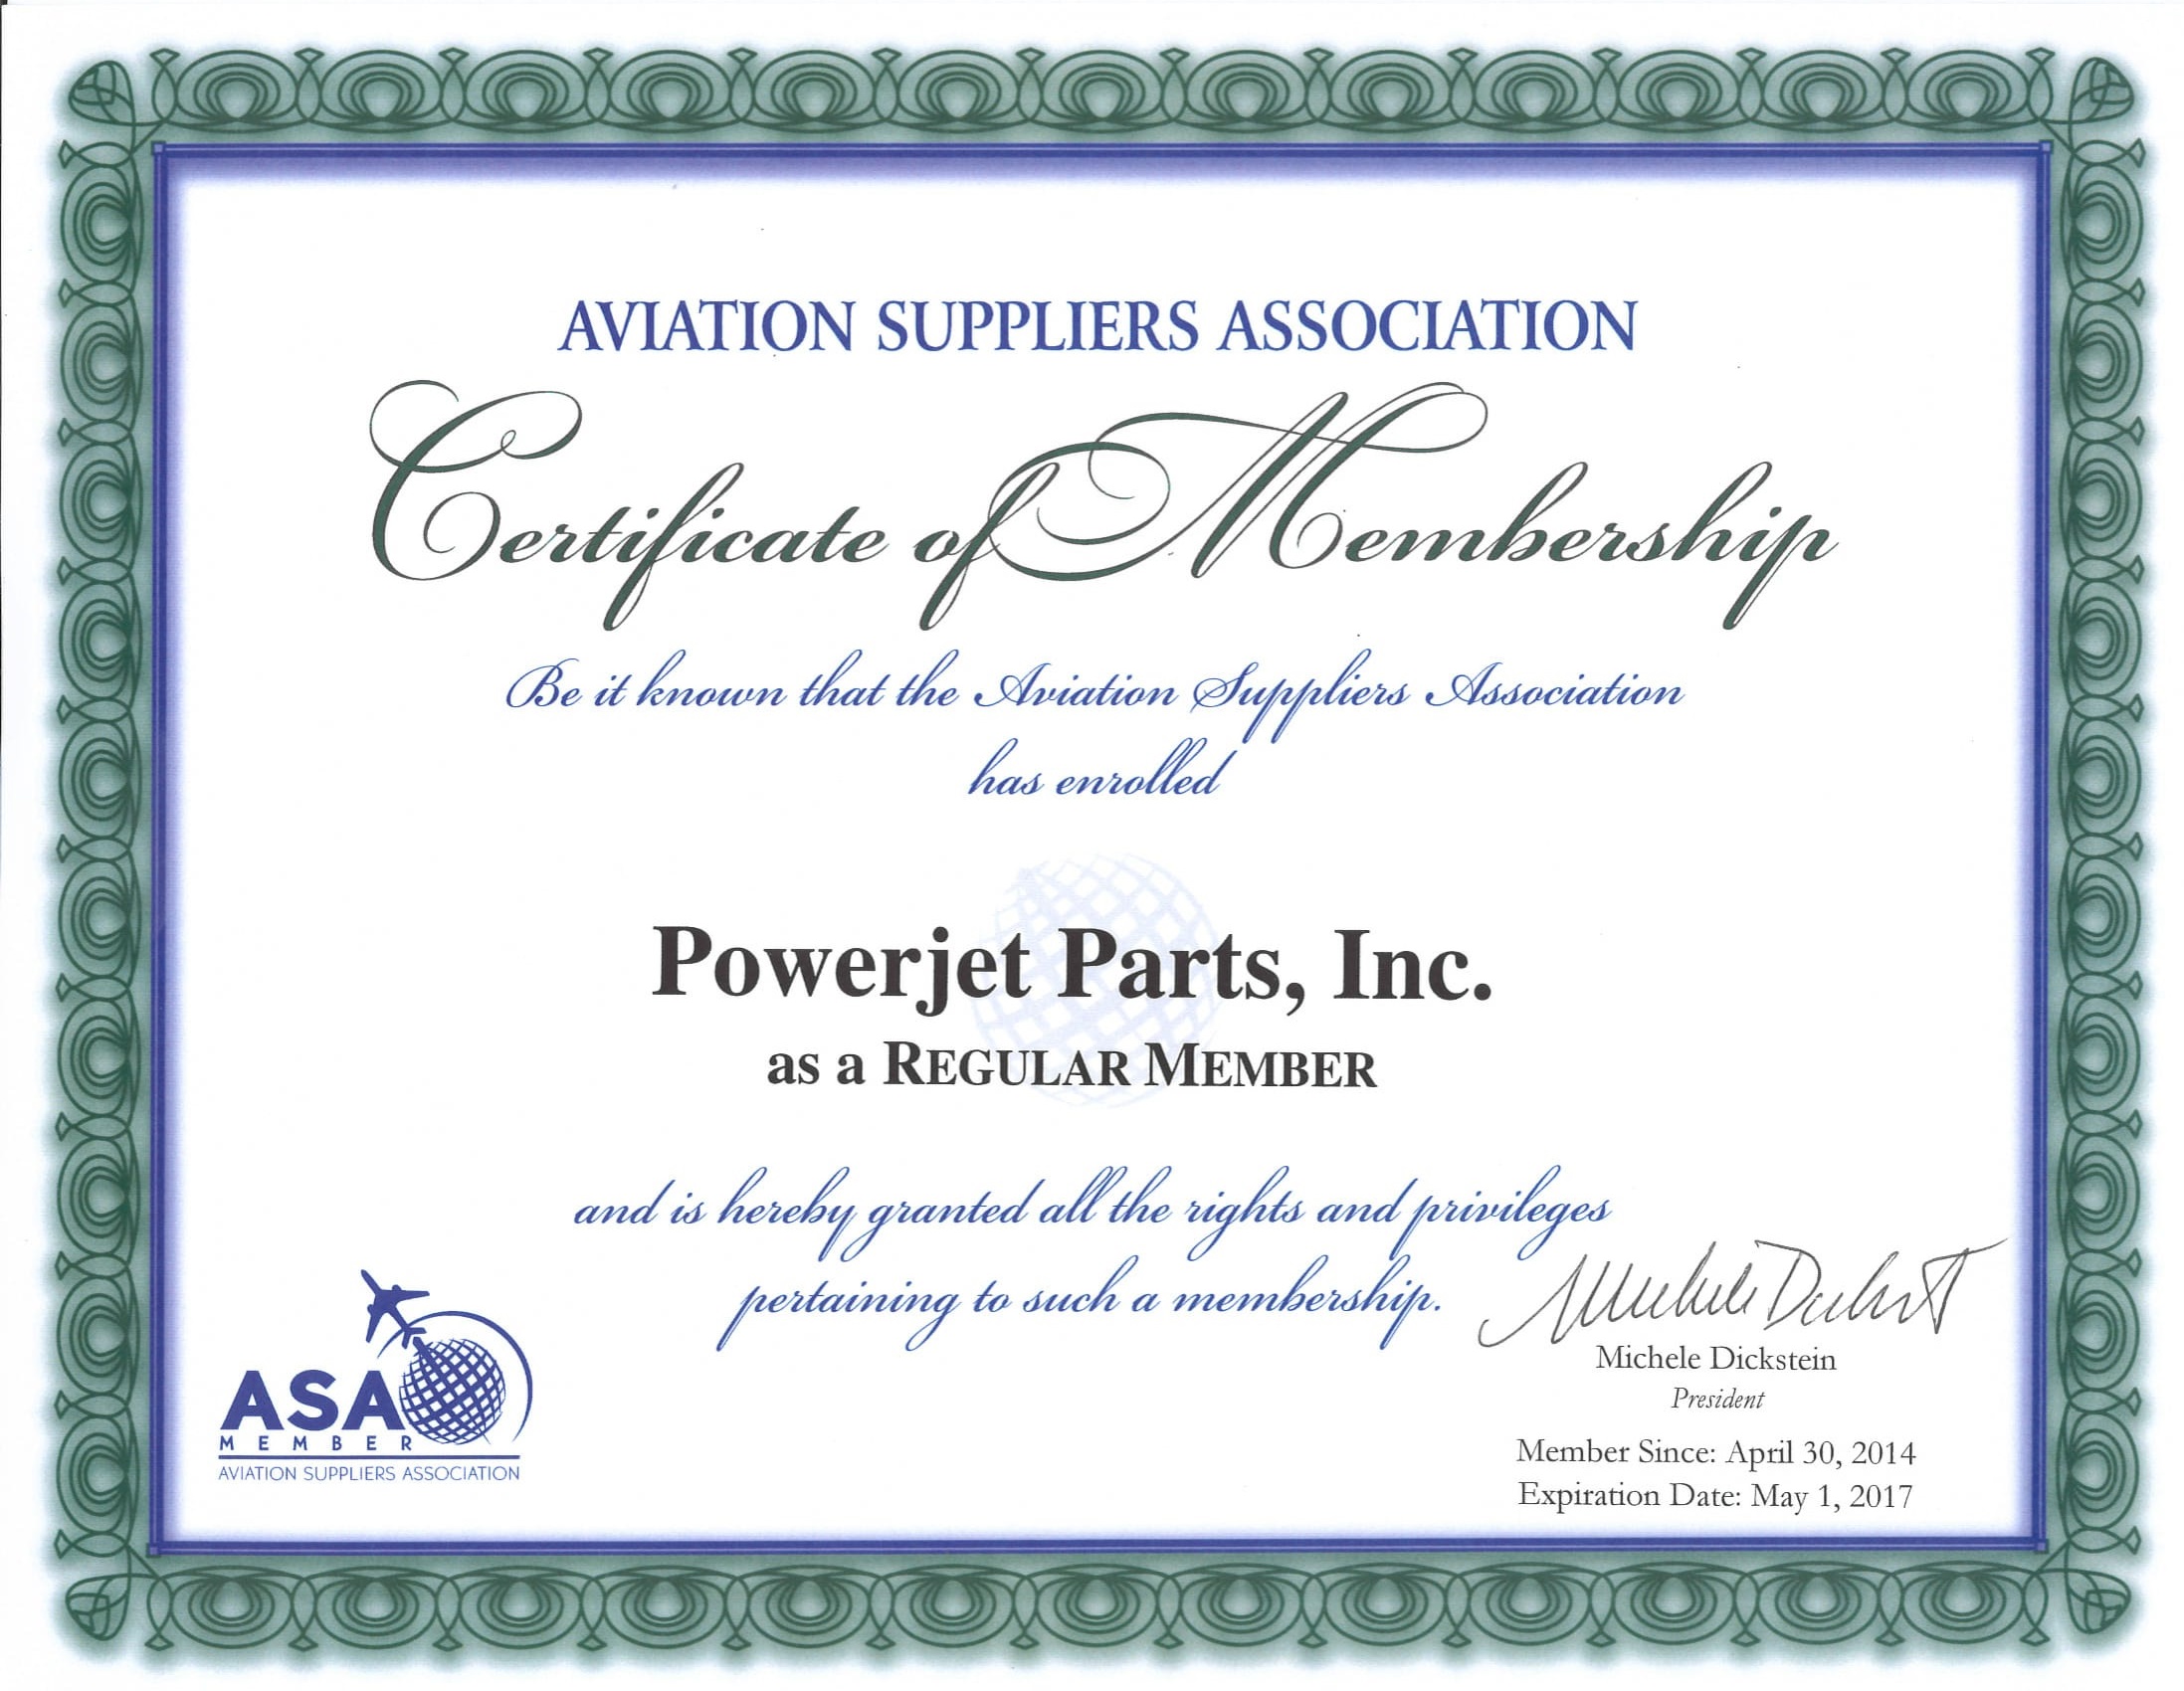 asa certificate exp may 2017 1 Powerjet Parts